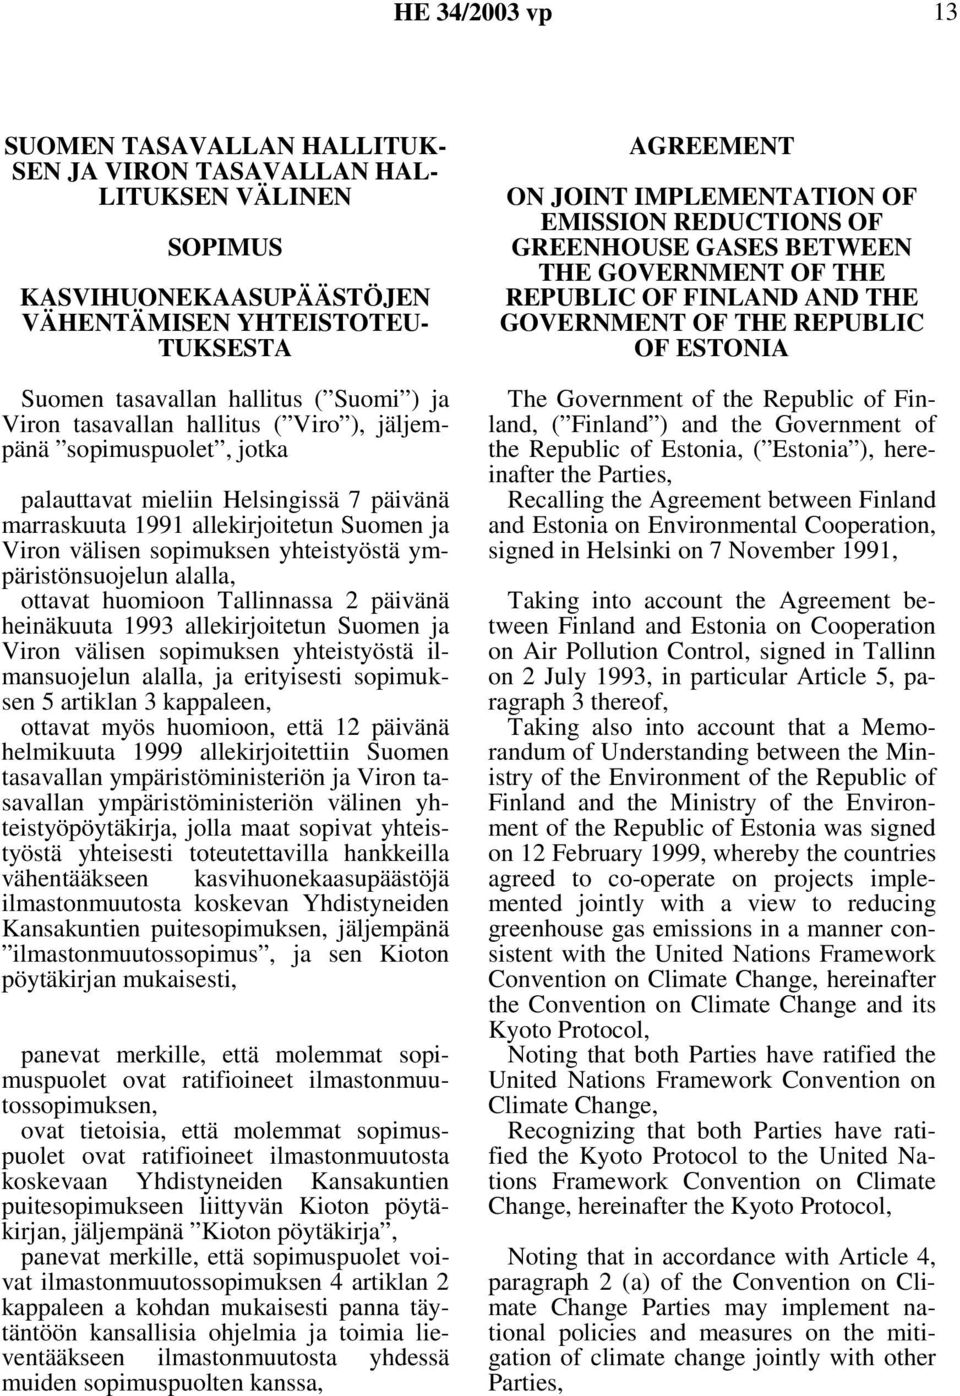 ympäristönsuojelun alalla, ottavat huomioon Tallinnassa 2 päivänä heinäkuuta 1993 allekirjoitetun Suomen ja Viron välisen sopimuksen yhteistyöstä ilmansuojelun alalla, ja erityisesti sopimuksen 5